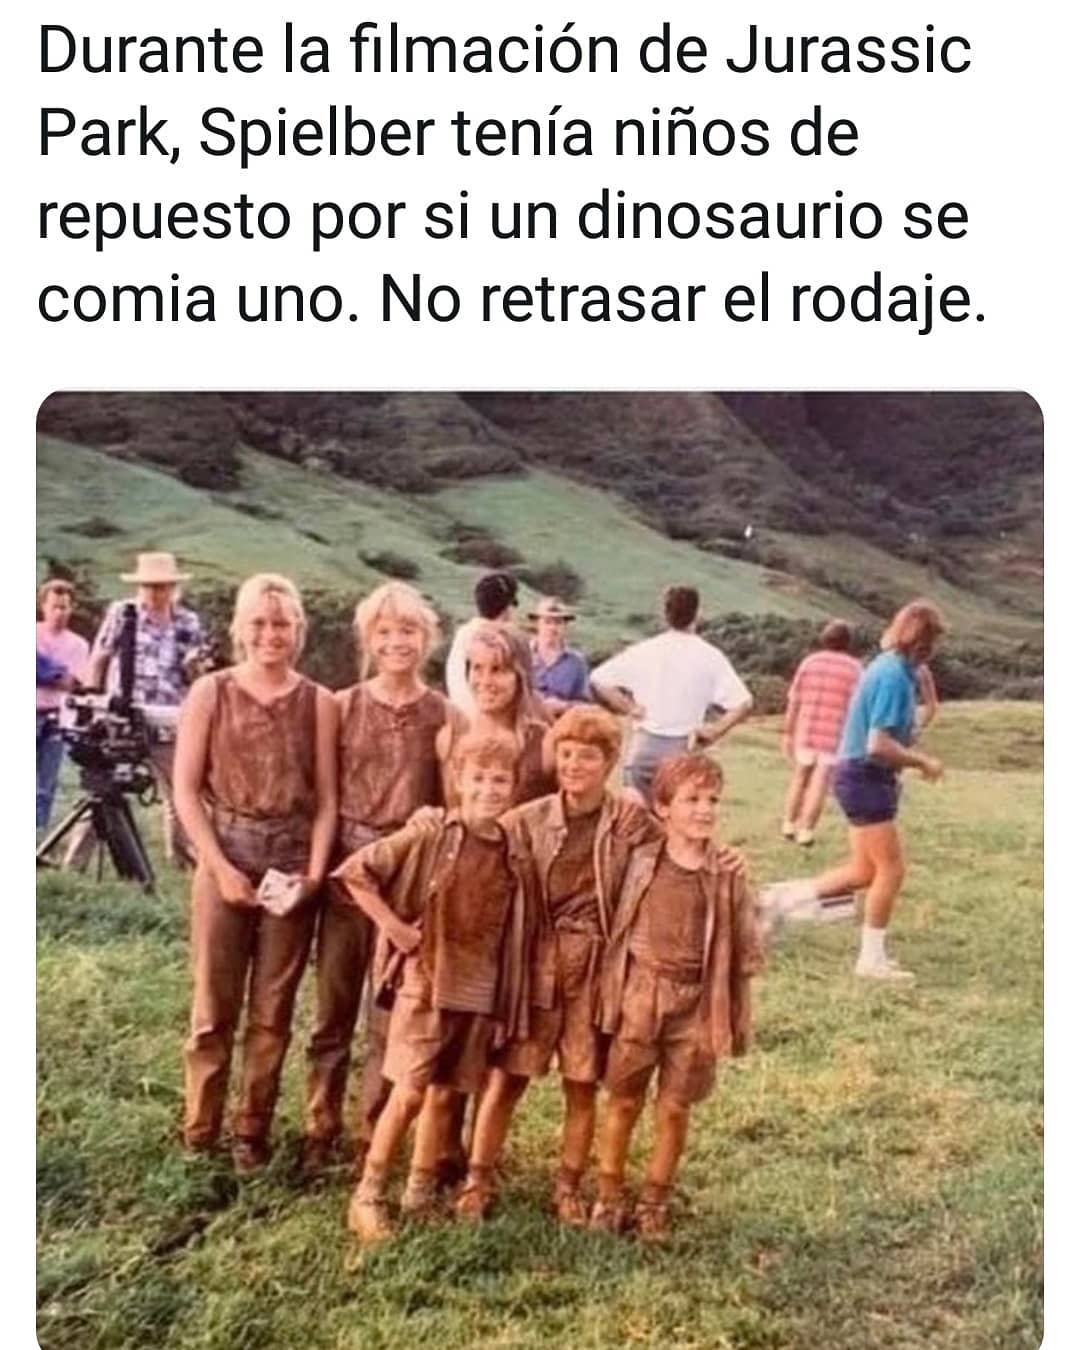 Durante la filmación de Jurassic Park, Spielber tenía niños de repuesto por si un dinosaurio se comía uno. No retrasar el rodaje.